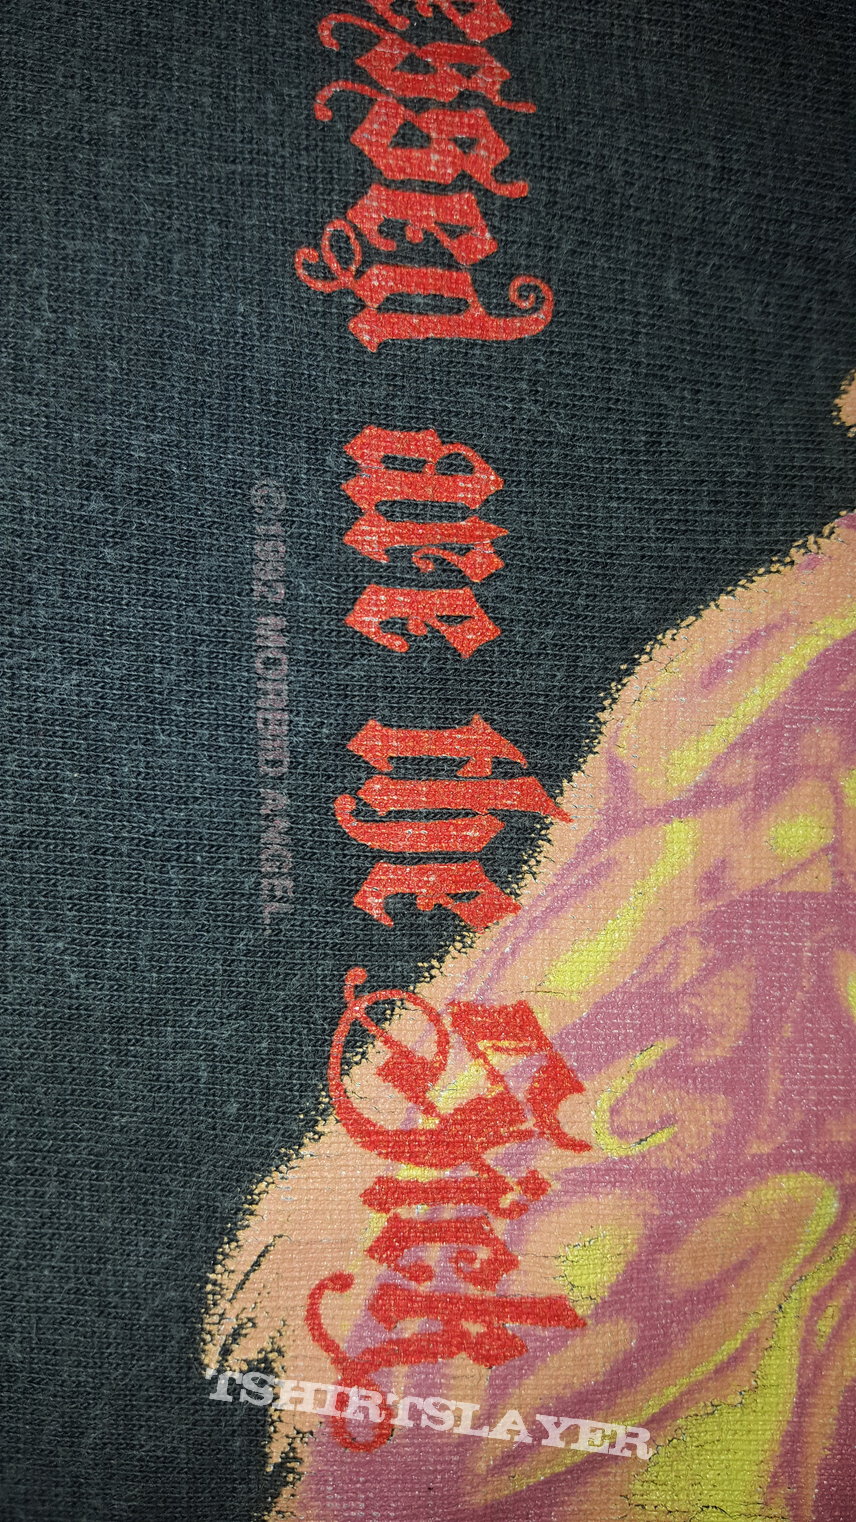 Morbid Angel - 1992 Aussie Tour tshirt, size M.